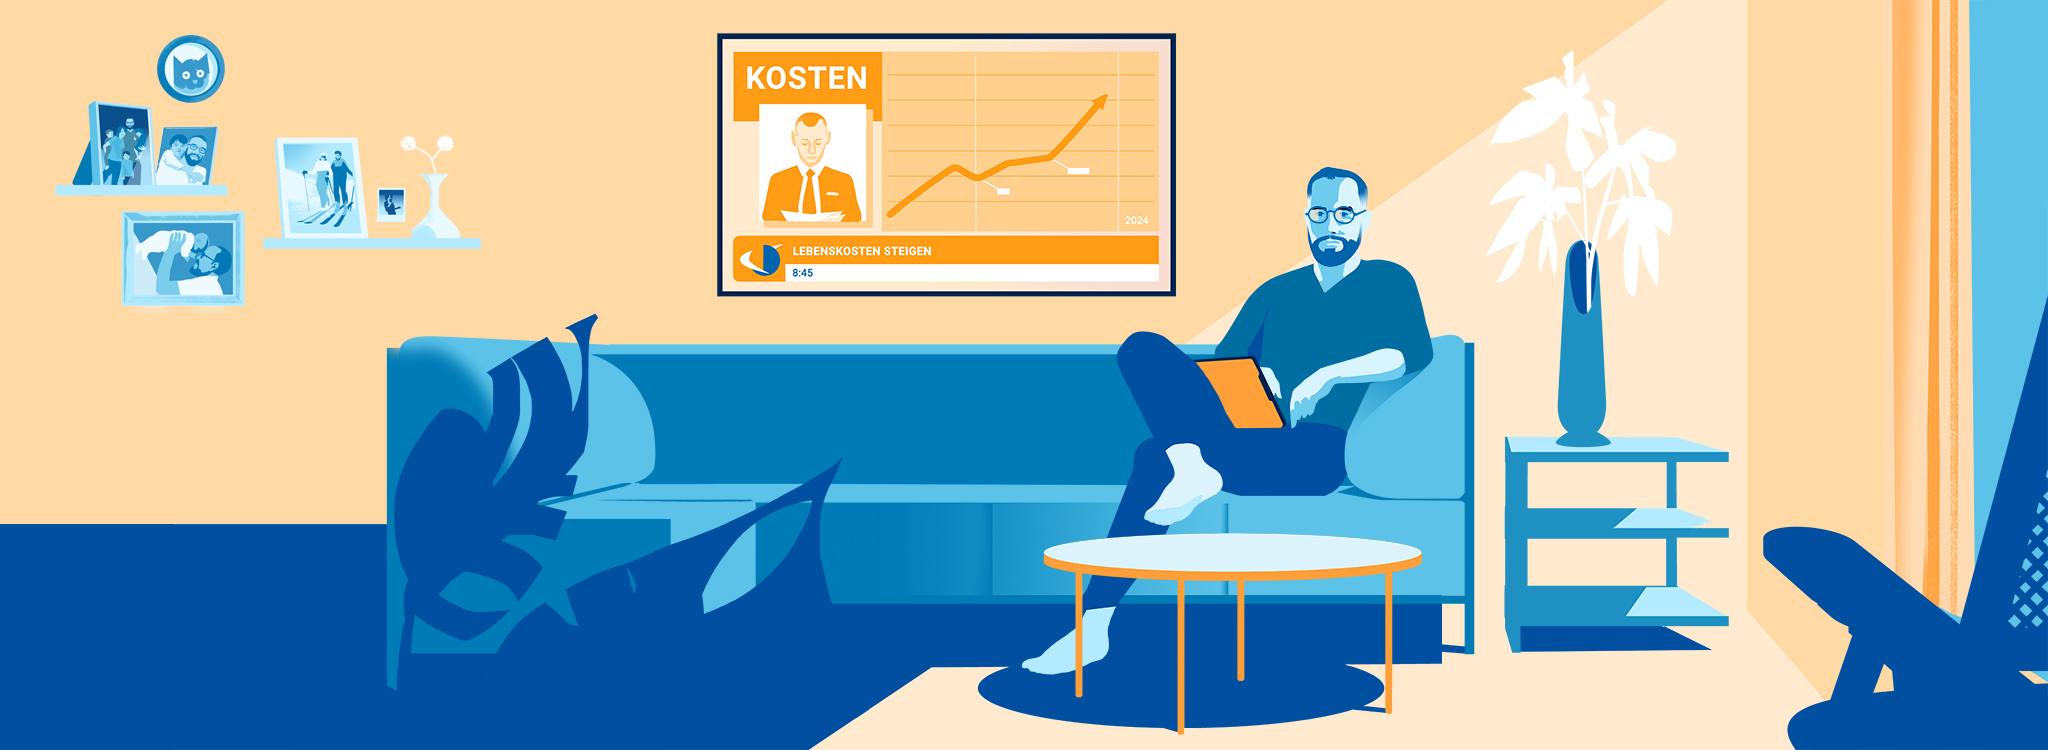 Grafik in Blau- und Orangetönen, die einen entspannten Mann auf einer Couch mit Laptop zeigt.